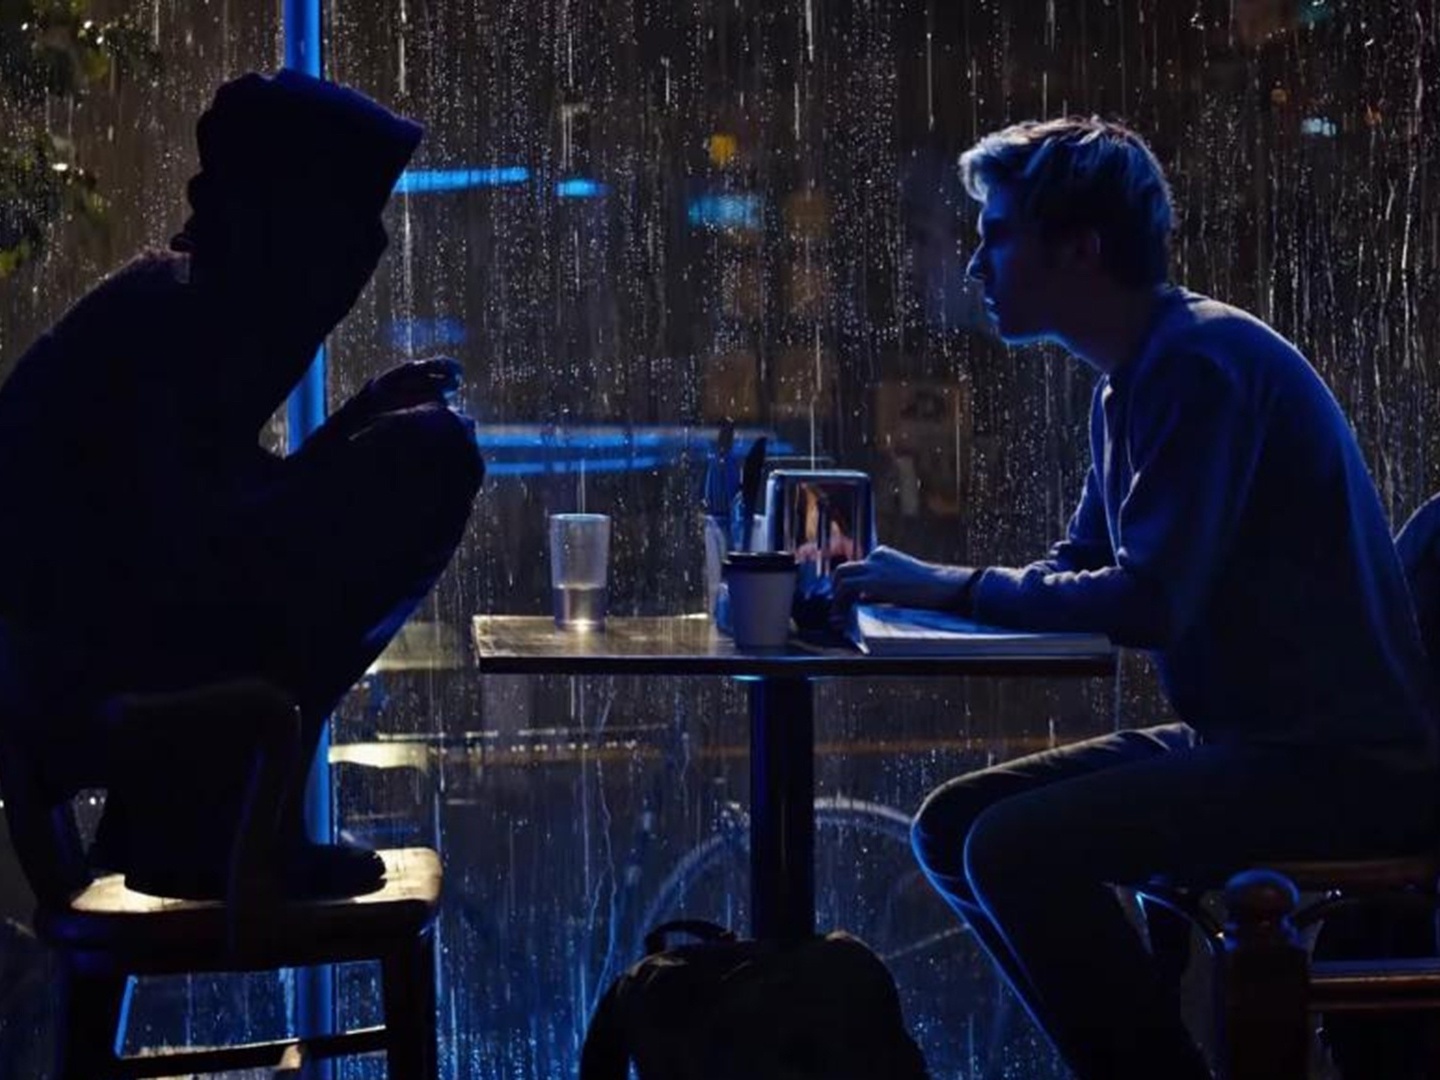 Death Note (Netflix) – O melhor filme de comédia do ano